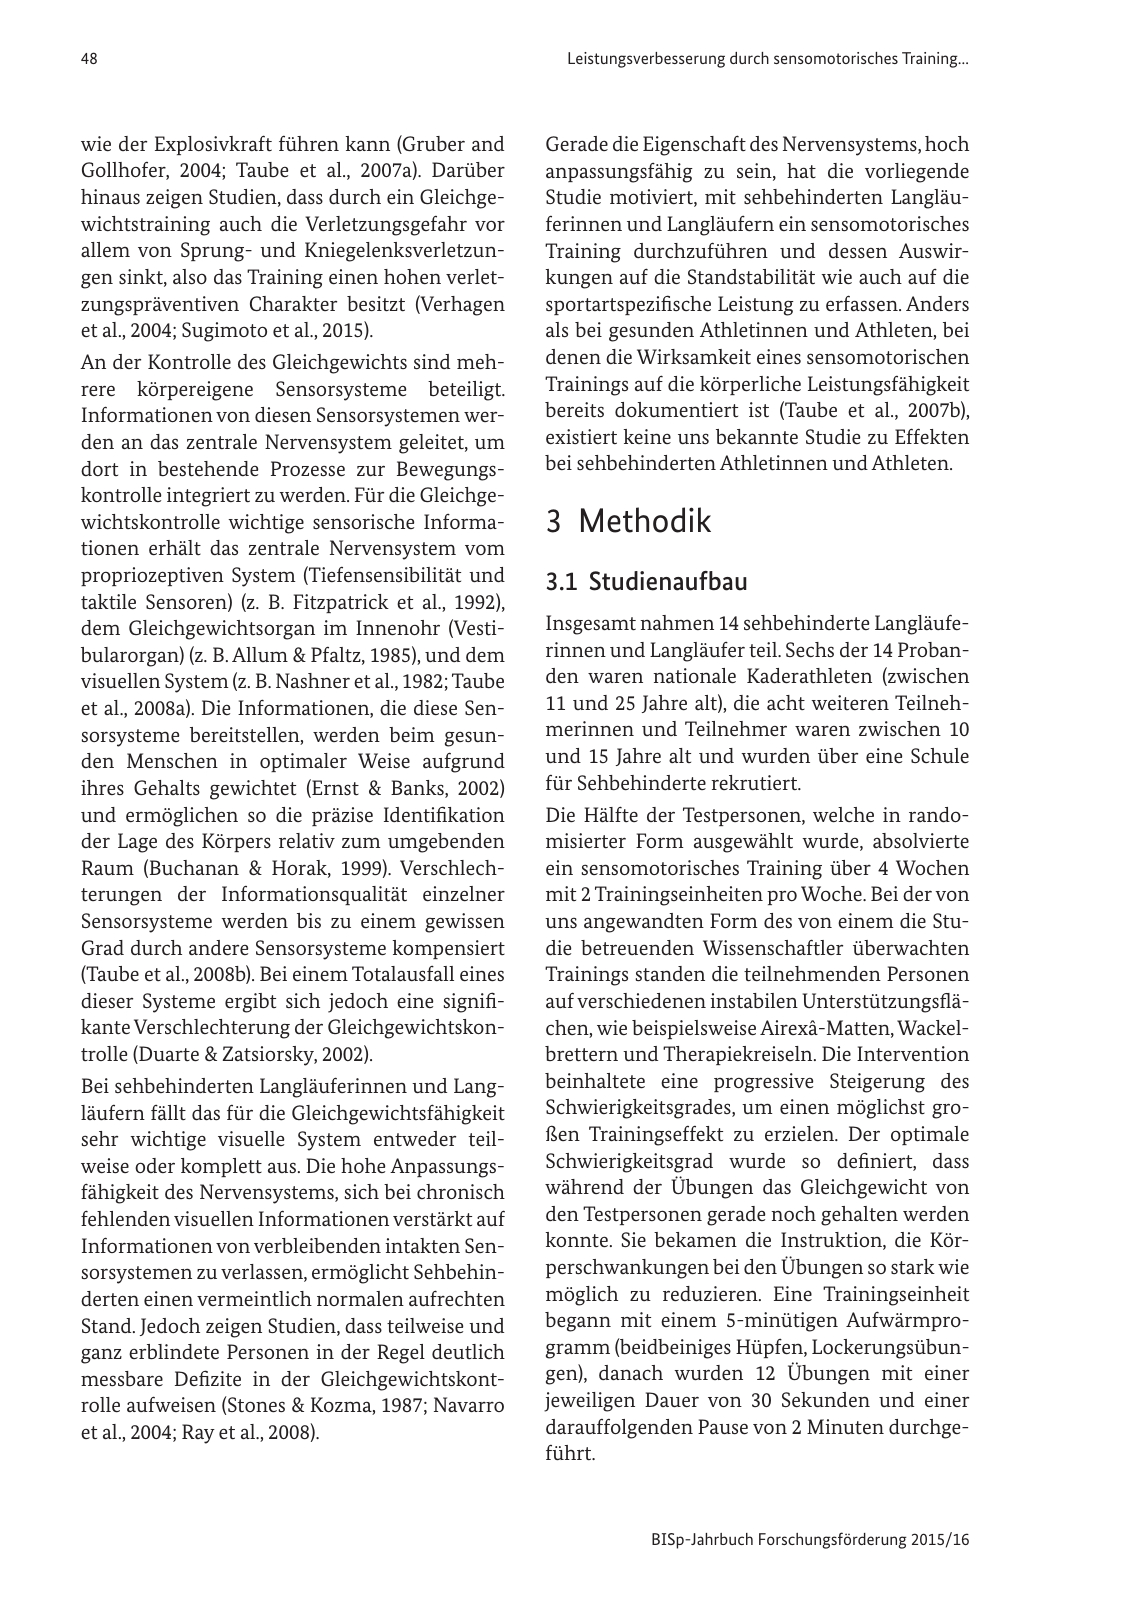 Vorschau BISp-Jahrbuch Forschungsförderung 2015/16 Seite 50